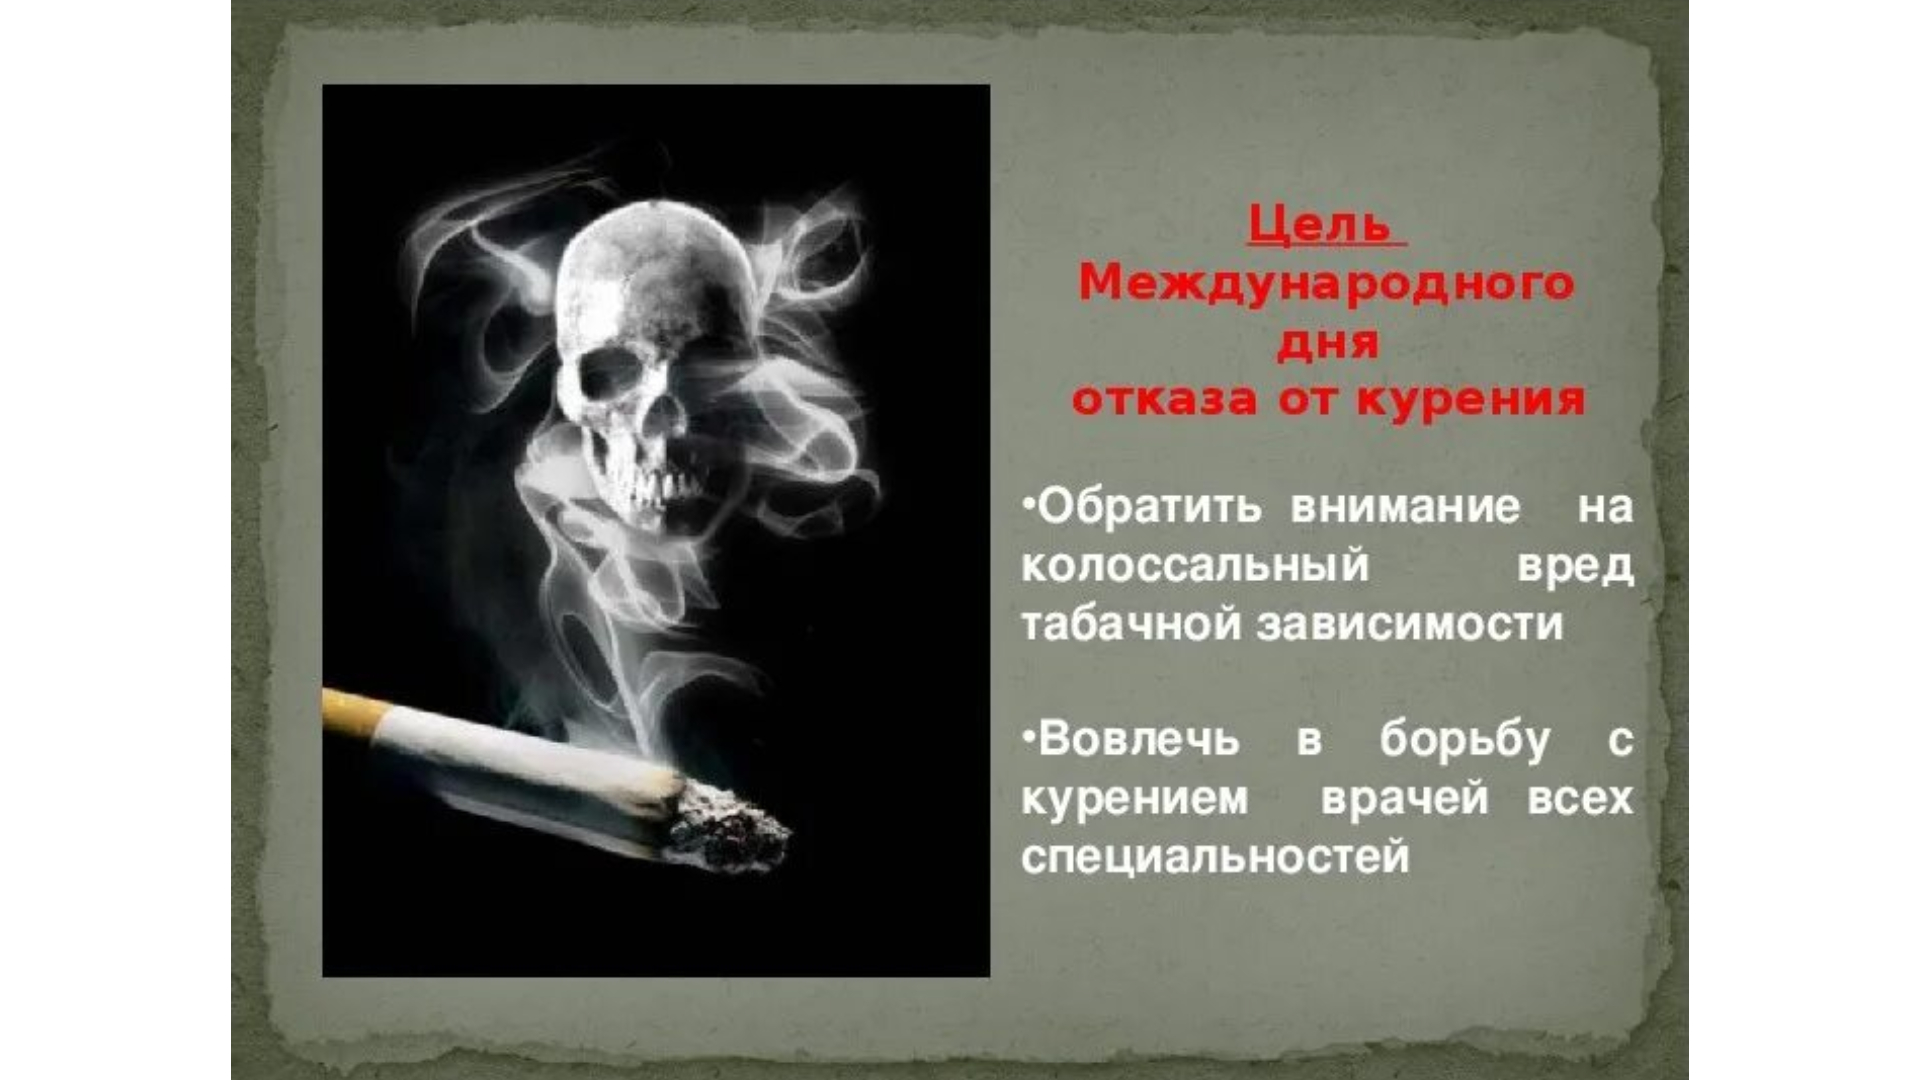 курение вредно для здоровья картинки